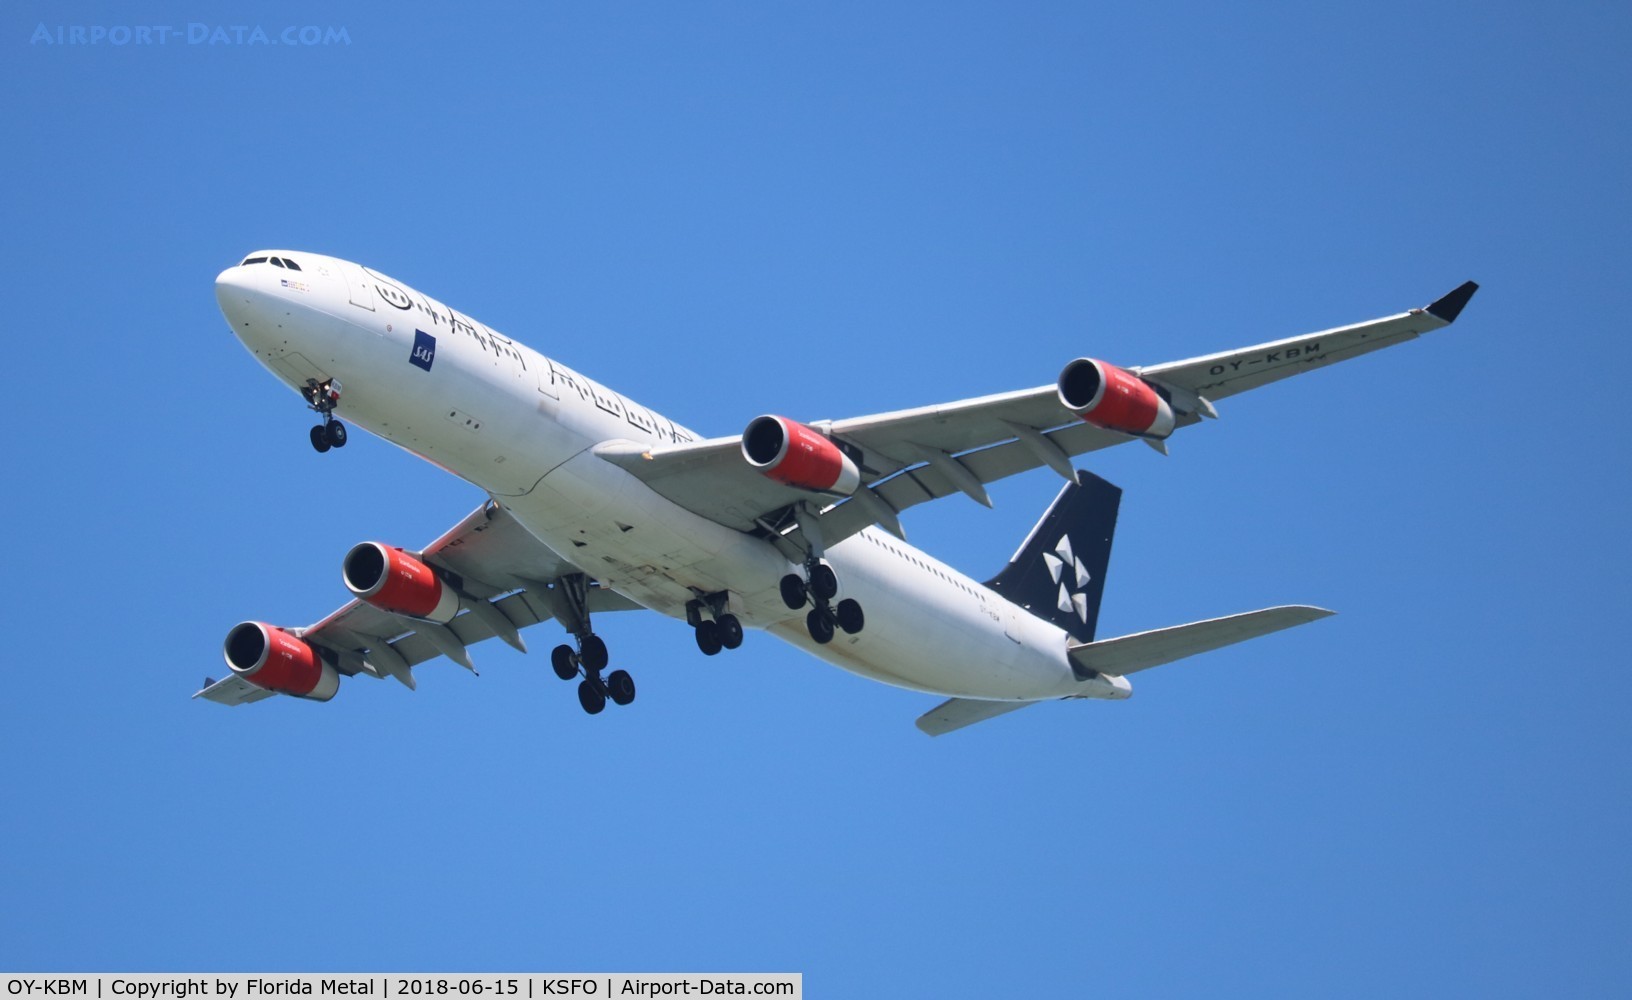 OY-KBM, 2002 Airbus A340-313X C/N 450, SFO spotting 2018